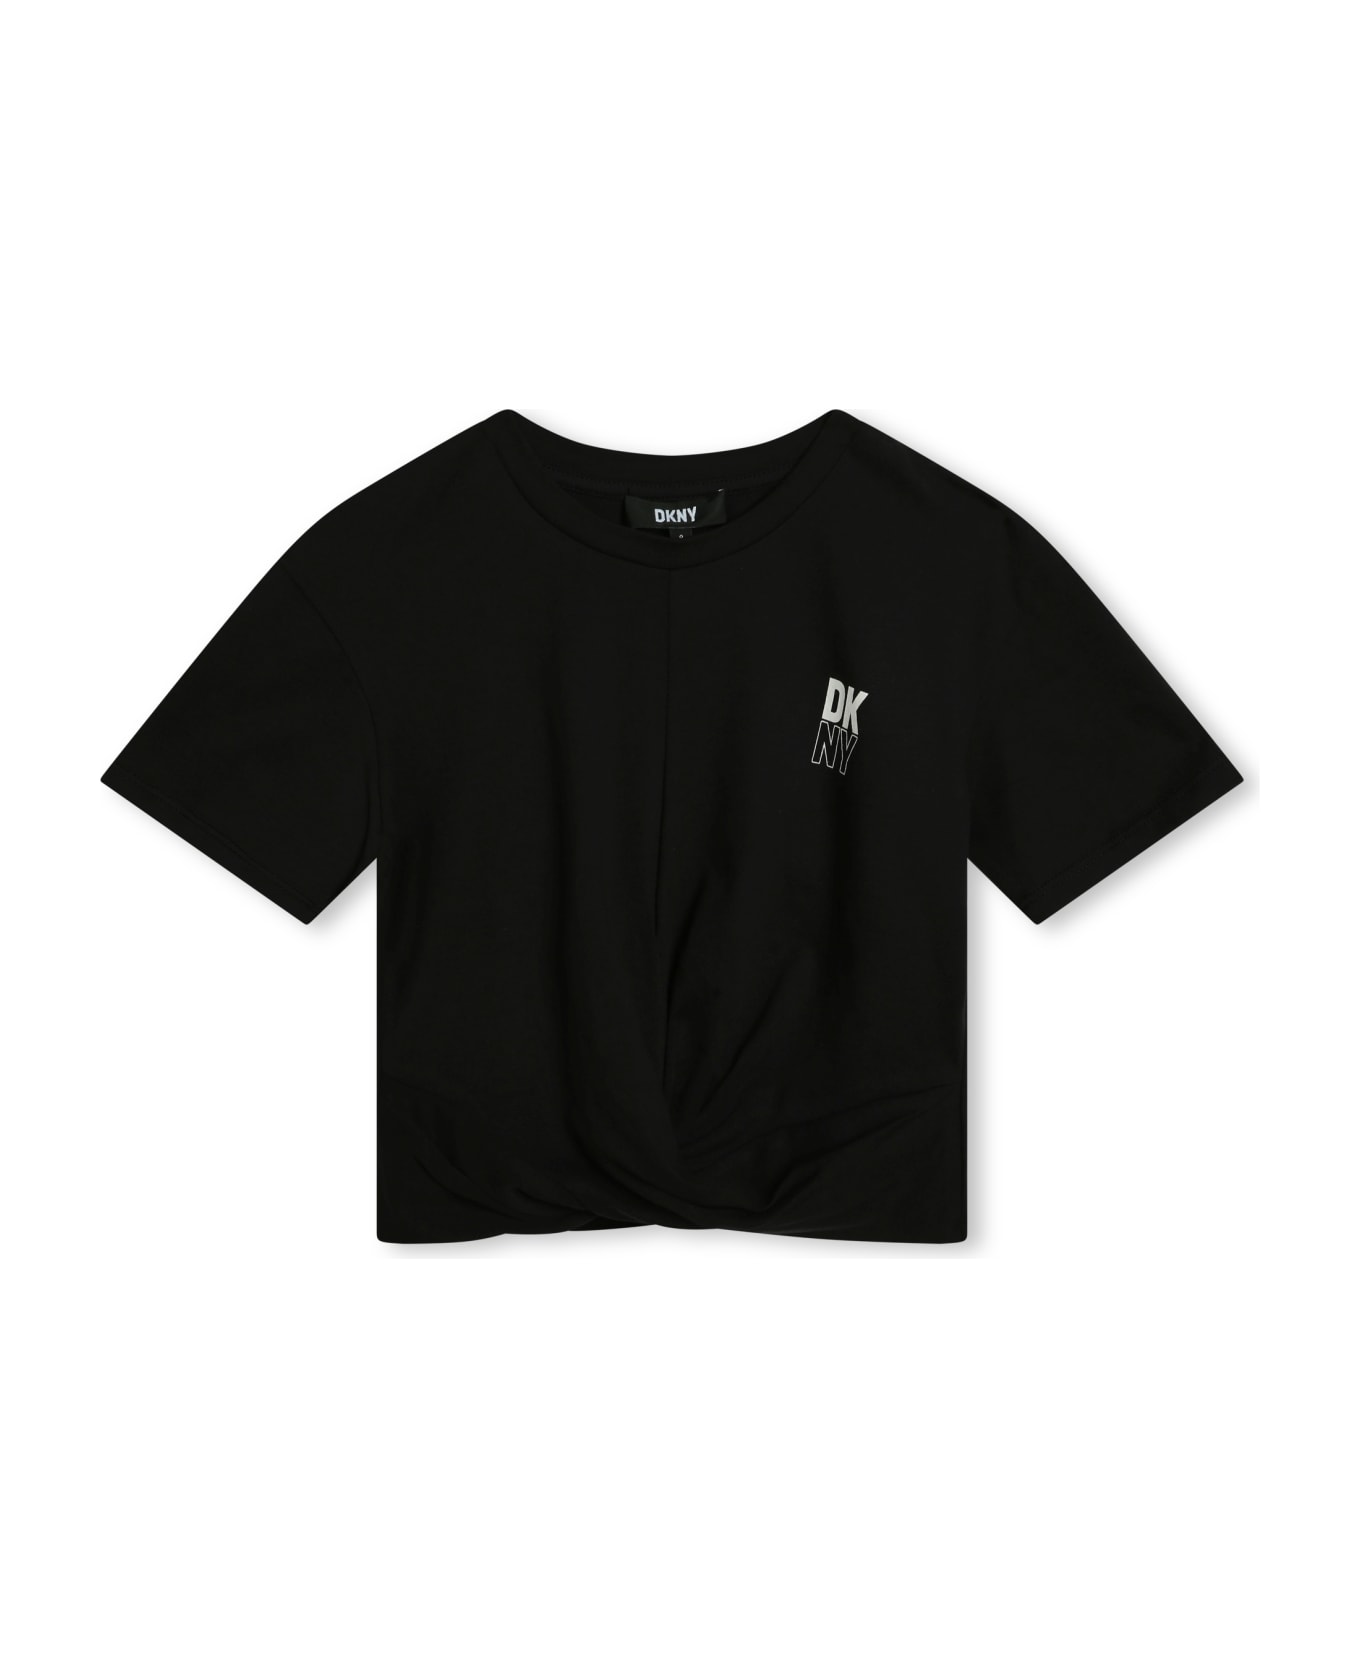 DKNY T-shirt With Print - Black